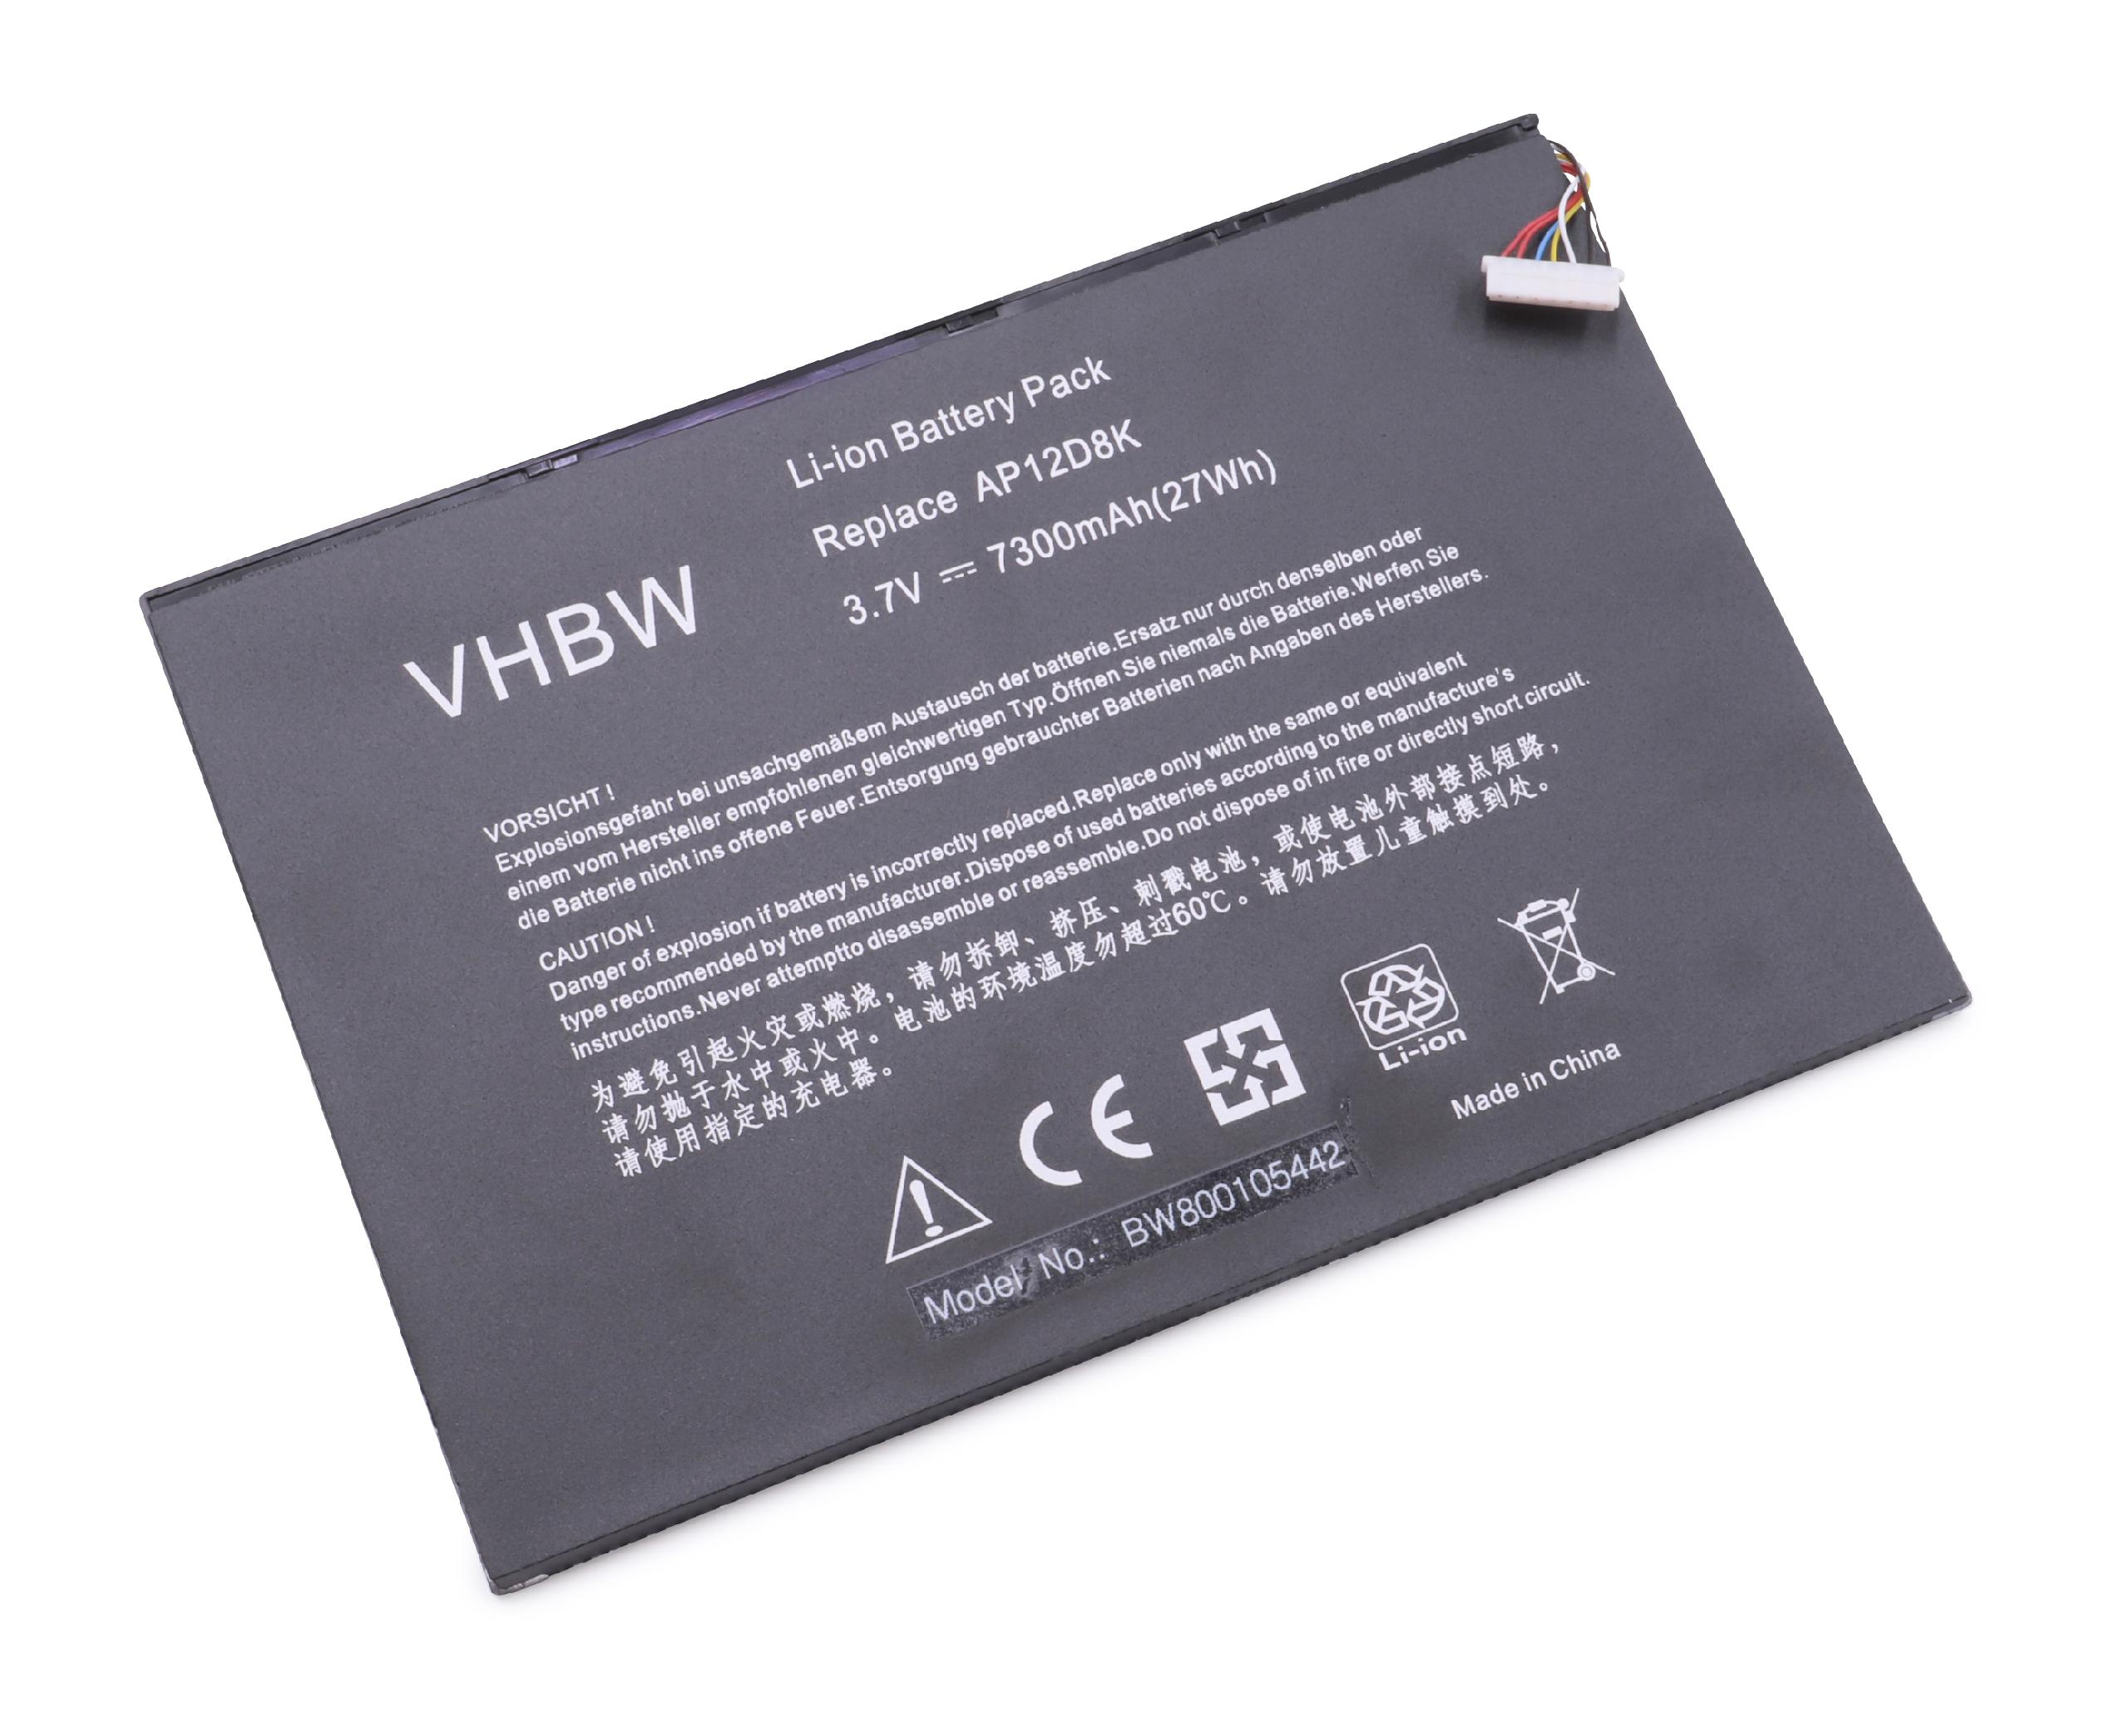 VHBW Ersatz für Acer AP12D8K Volt, 3.7 für Akku - 1ICP4/83/103-2, 7300 Li-Polymer Tablet